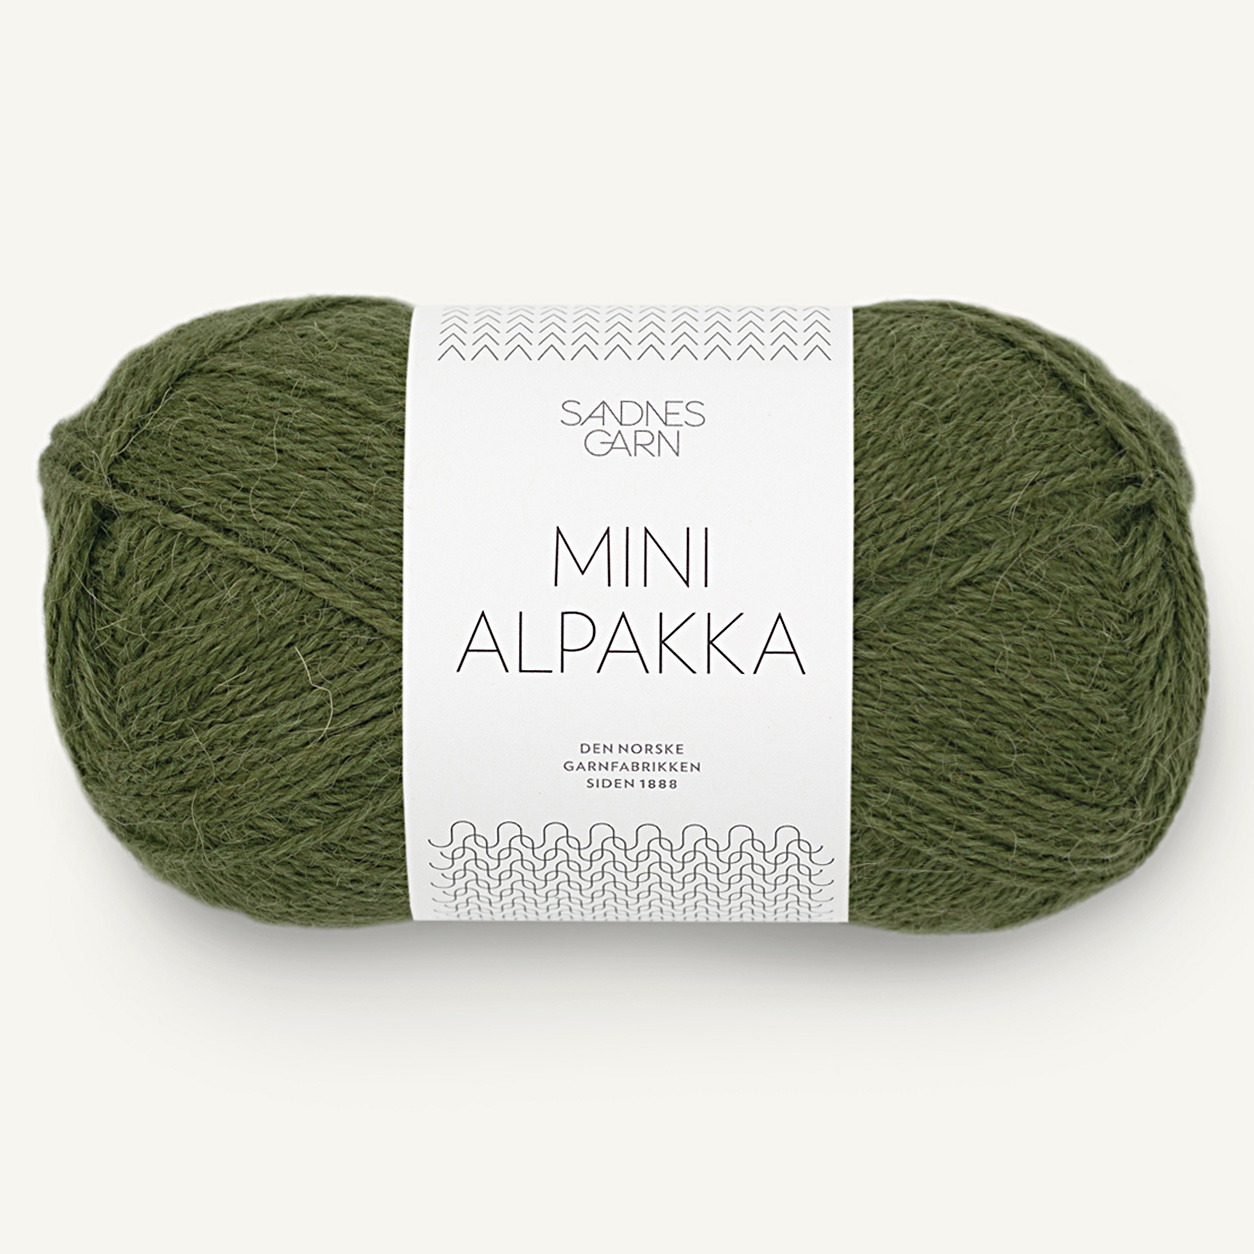 Sandnes Mini Alpakka, 9573, Moos